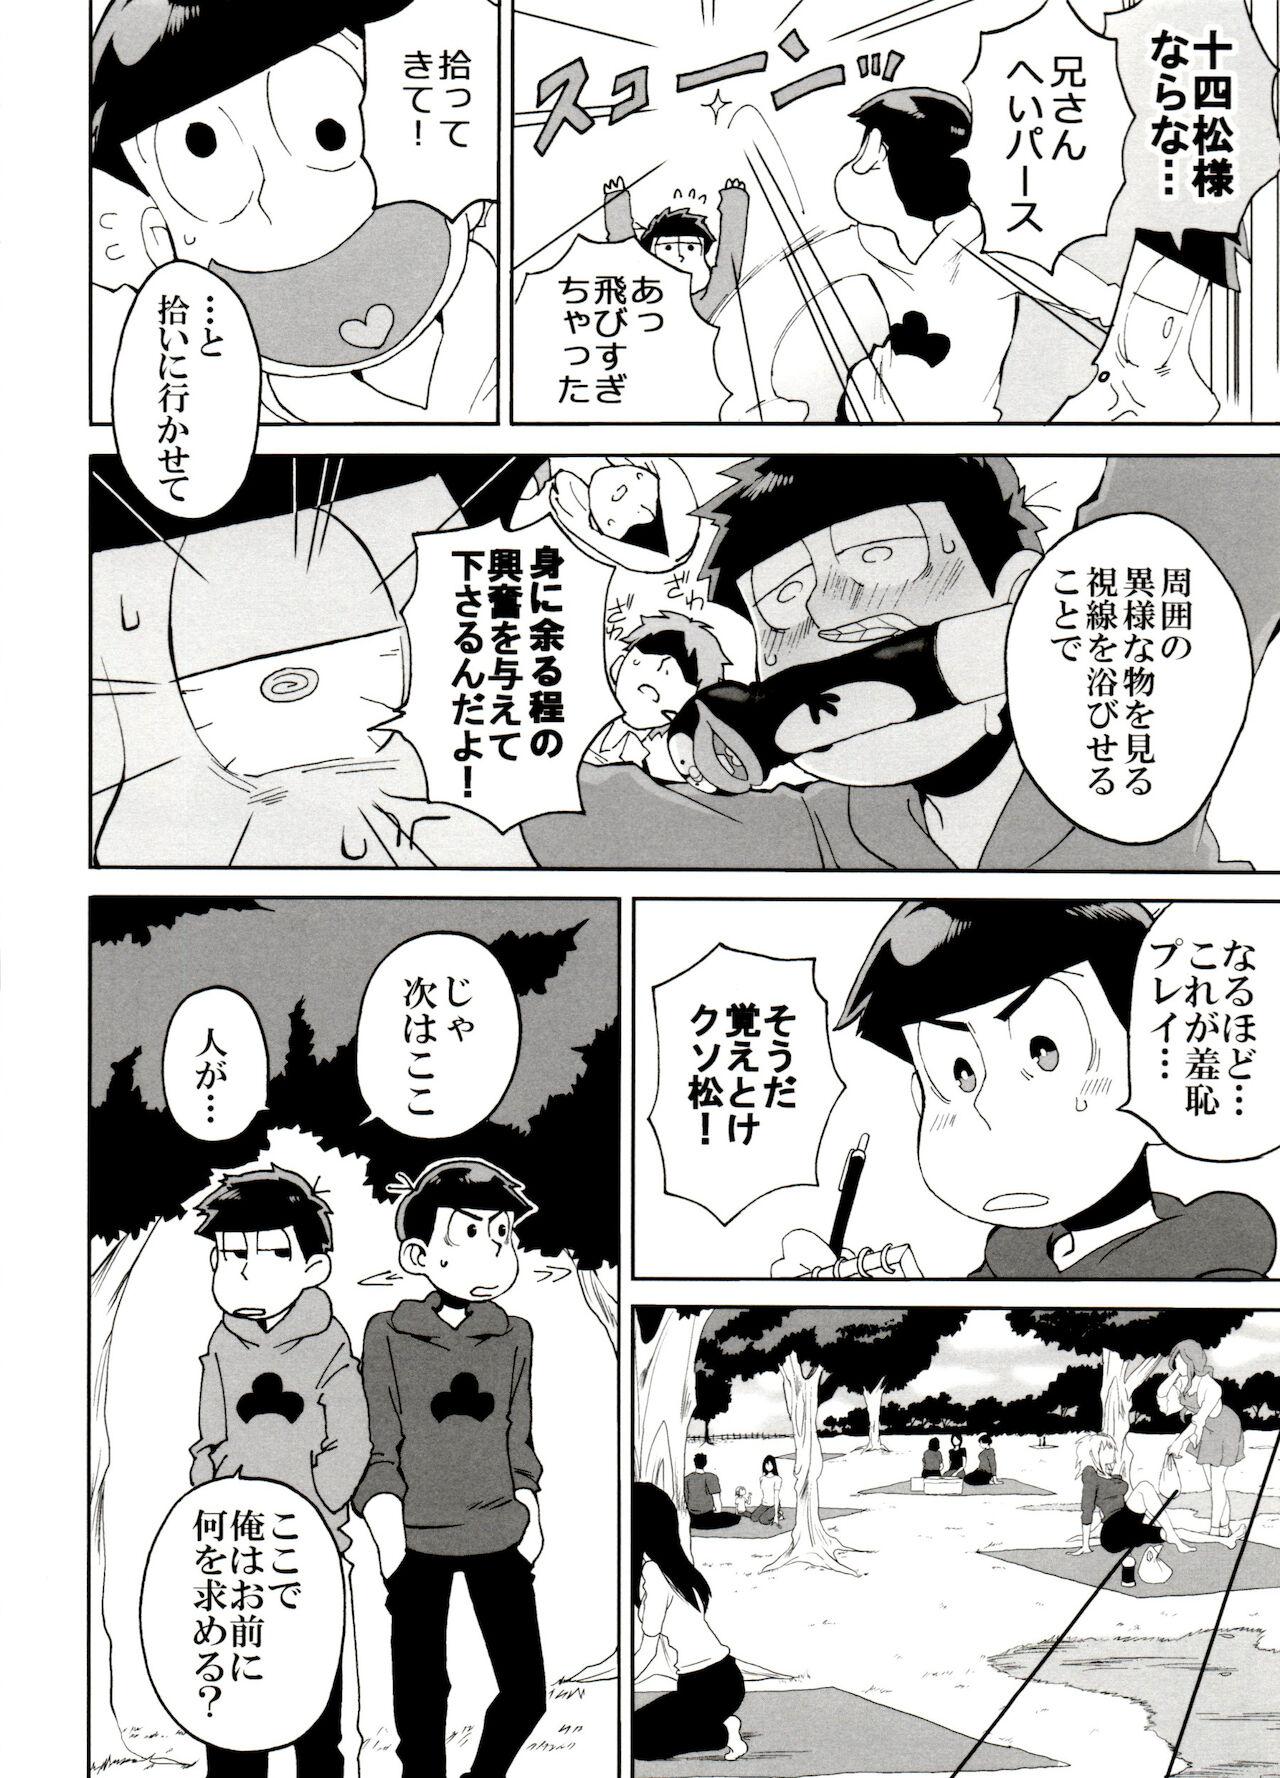 Blackmail SM Matsu 2 - Osomatsu-san Exhibition - Page 8